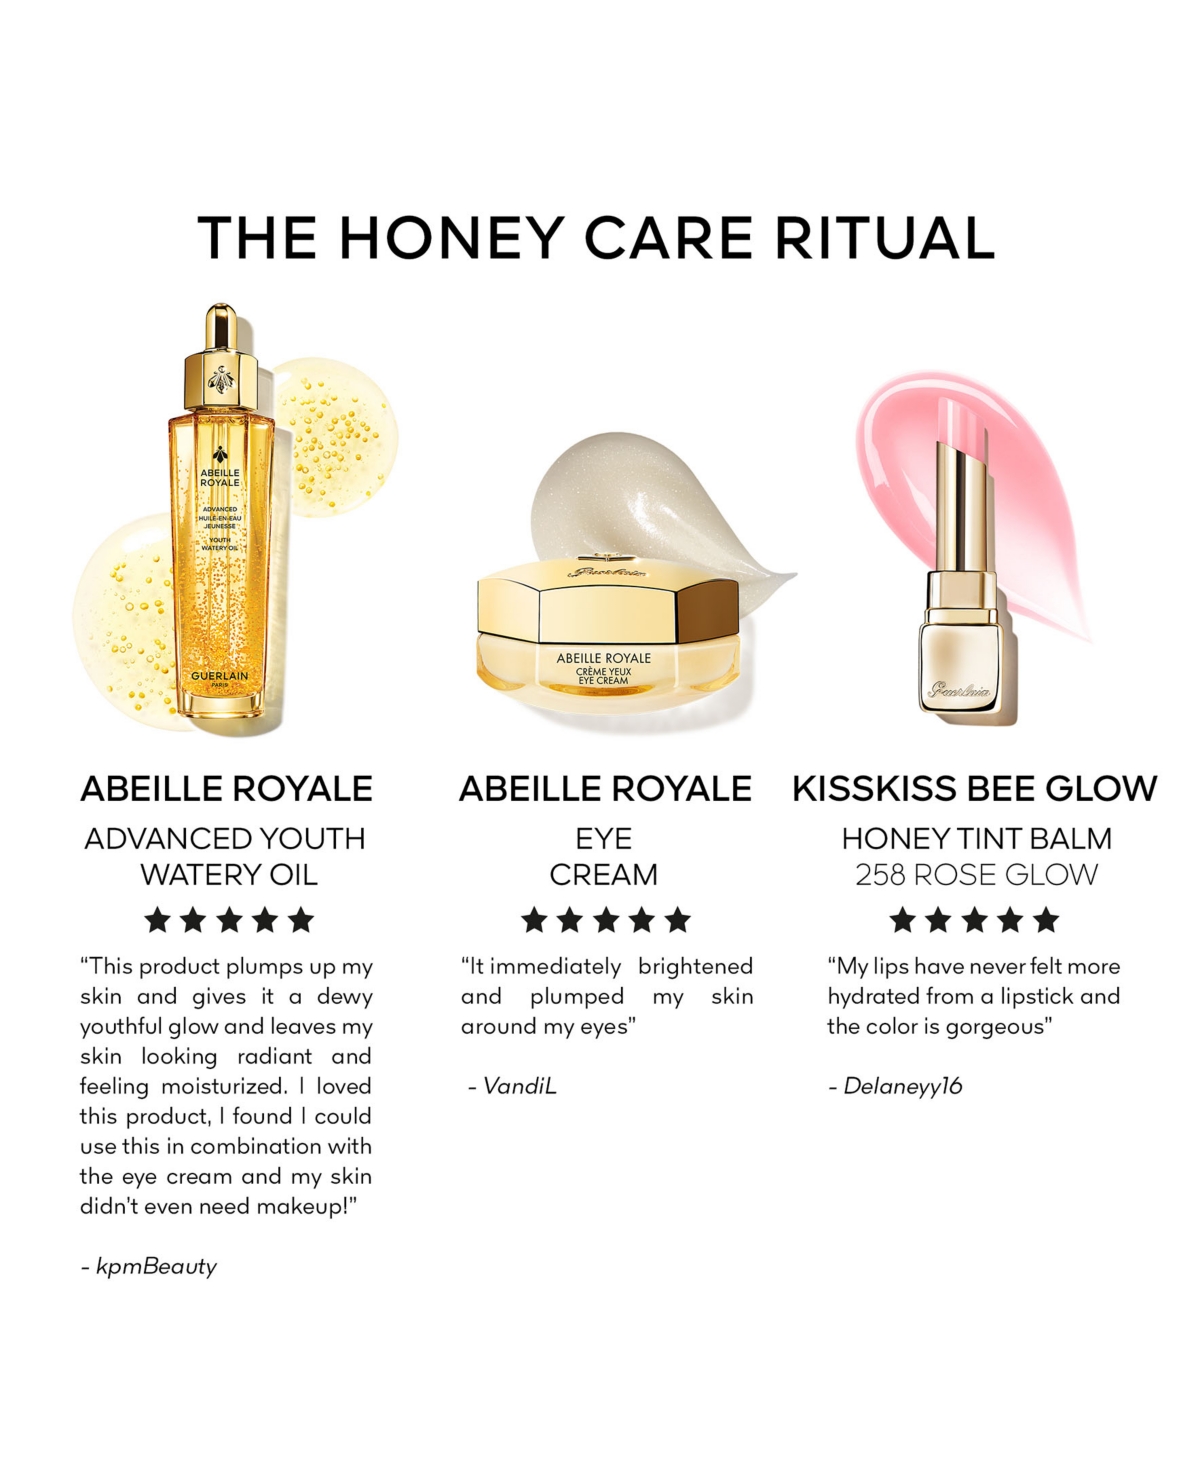 Shop Guerlain 3-pc. Abeille Royale Honey Care Ritual Set In No Color